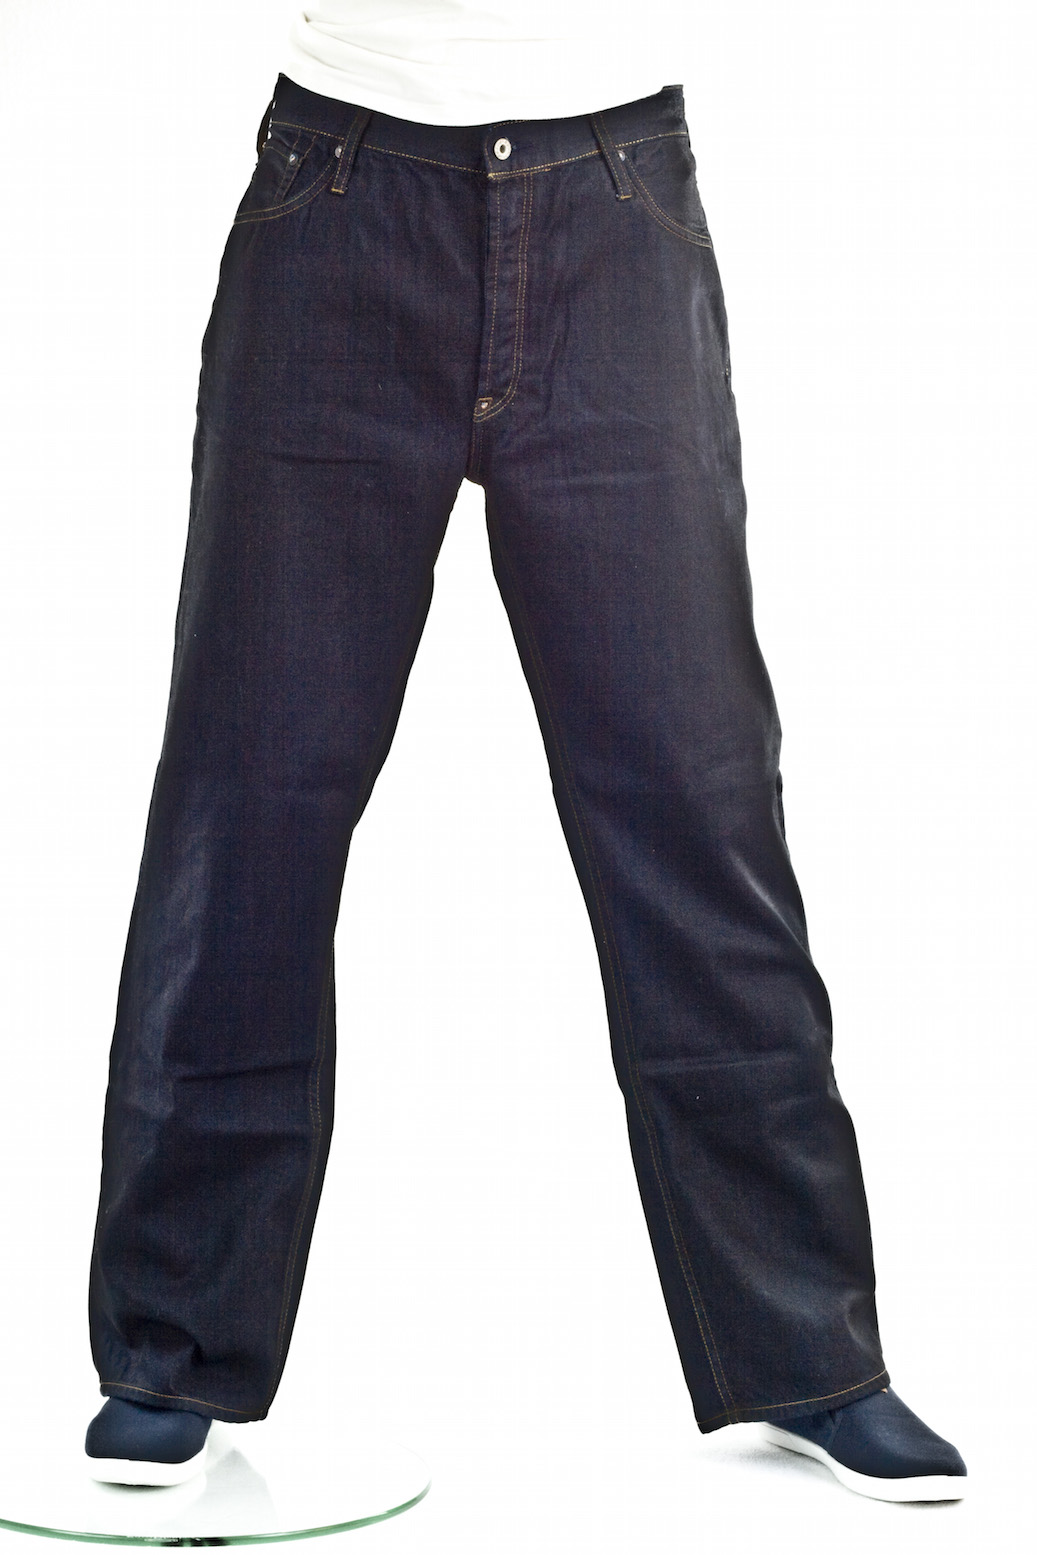 джинсы мужские Evisu прямые широкие Black seed jean